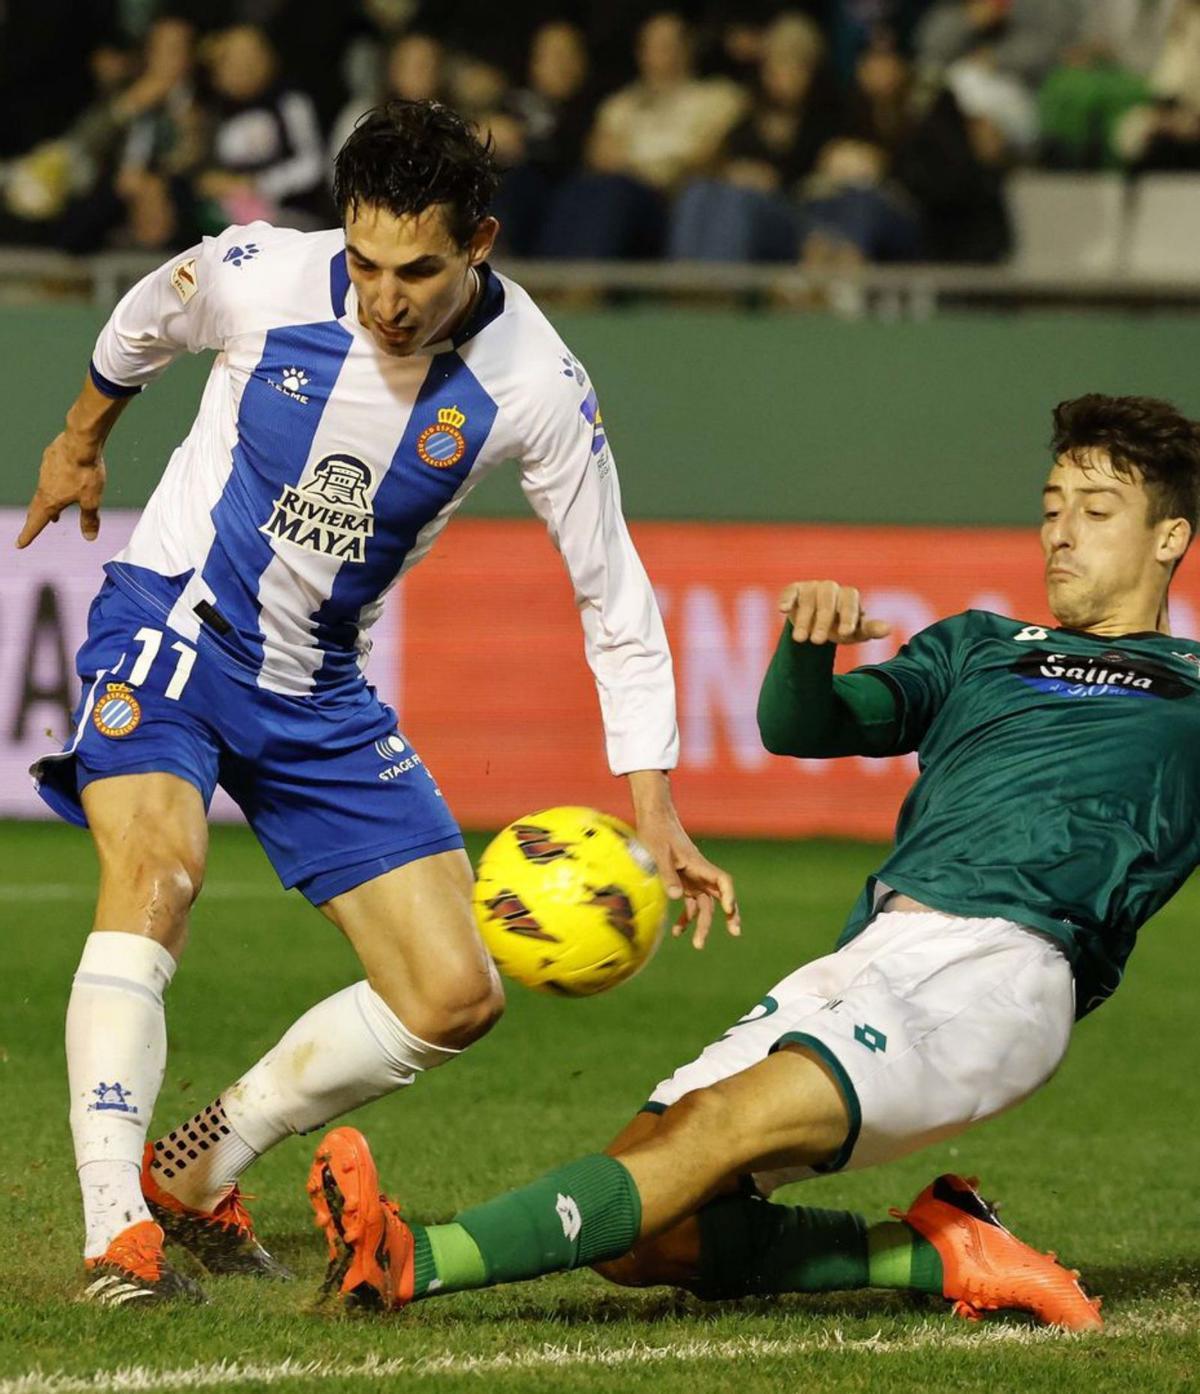 L’Espanyol arrenca un valuós empat en la seva visita a Ferrol